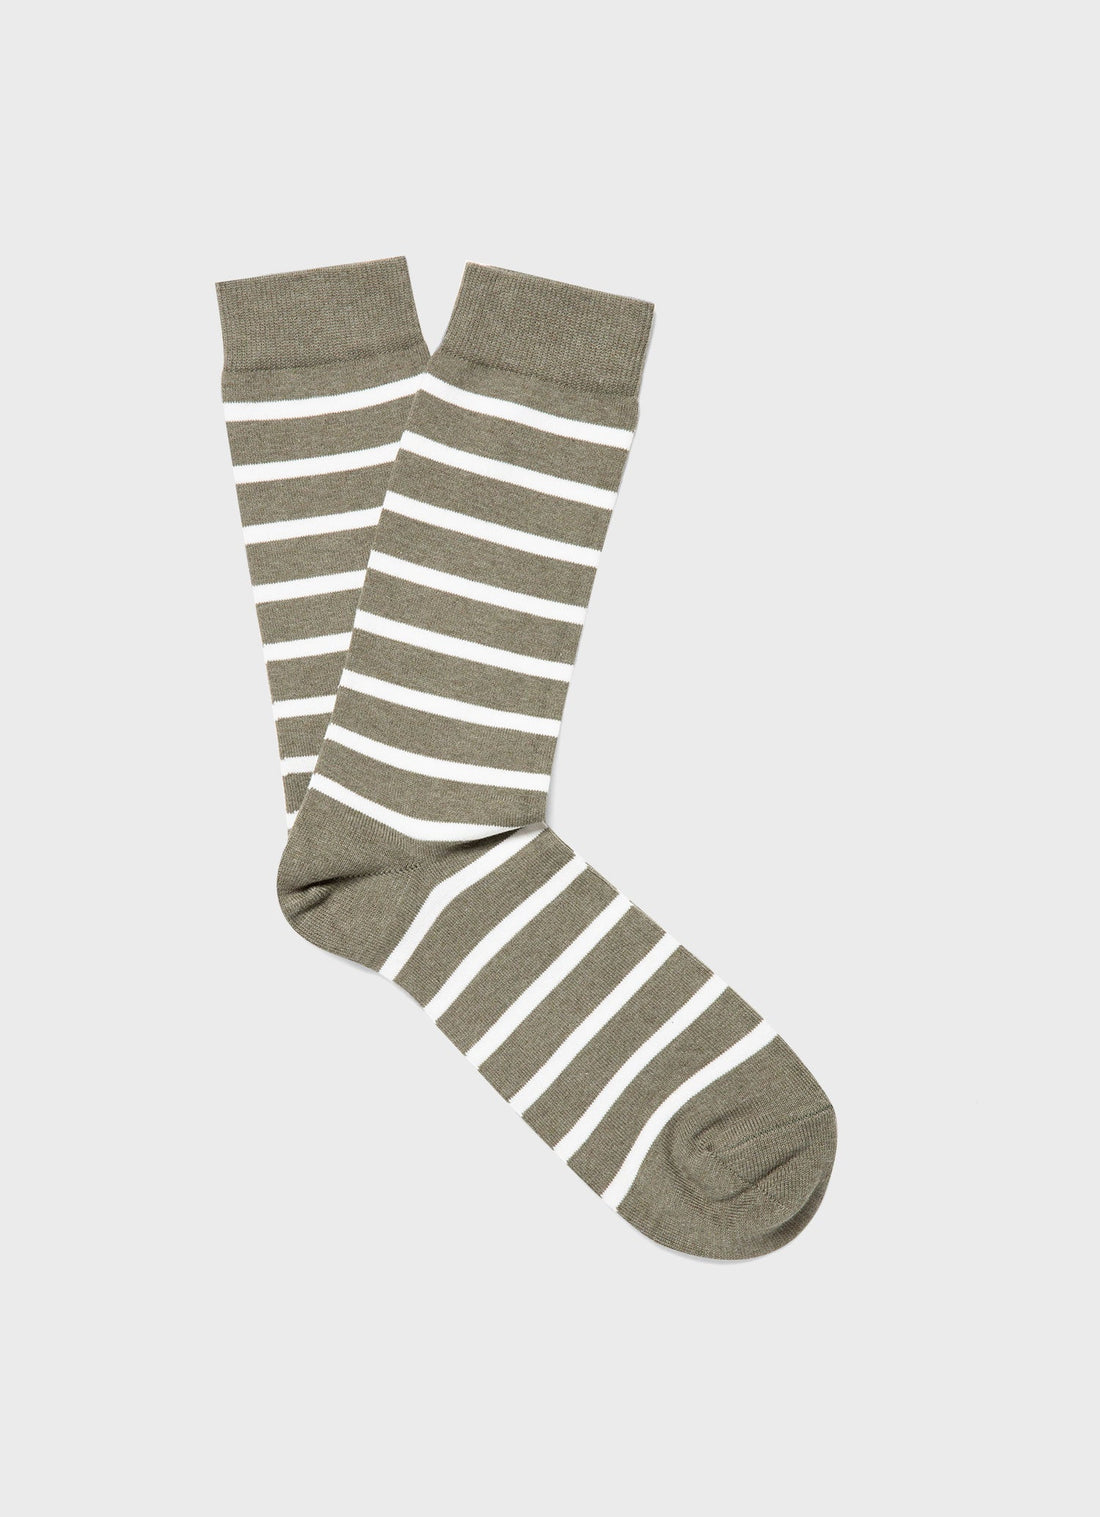 Men's Cotton Socks in Pale Khaki/Ecru Breton Stripe